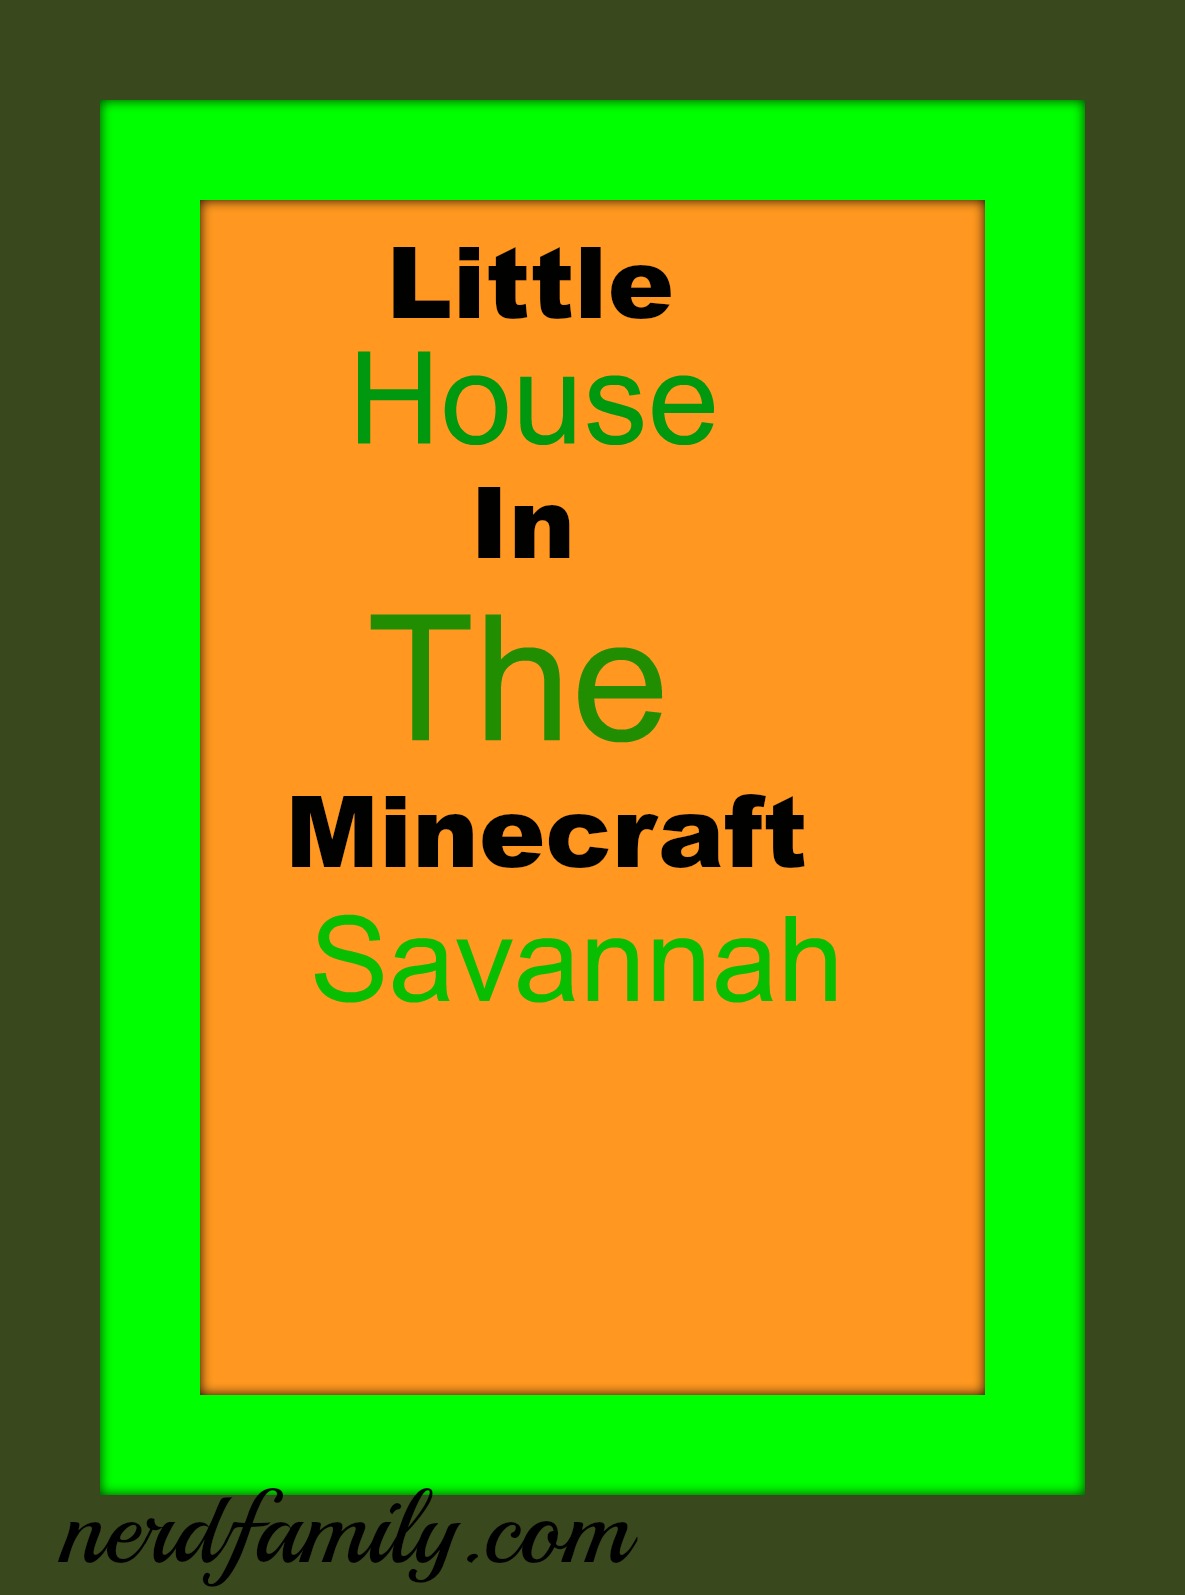 Savannah-minecraft-monday